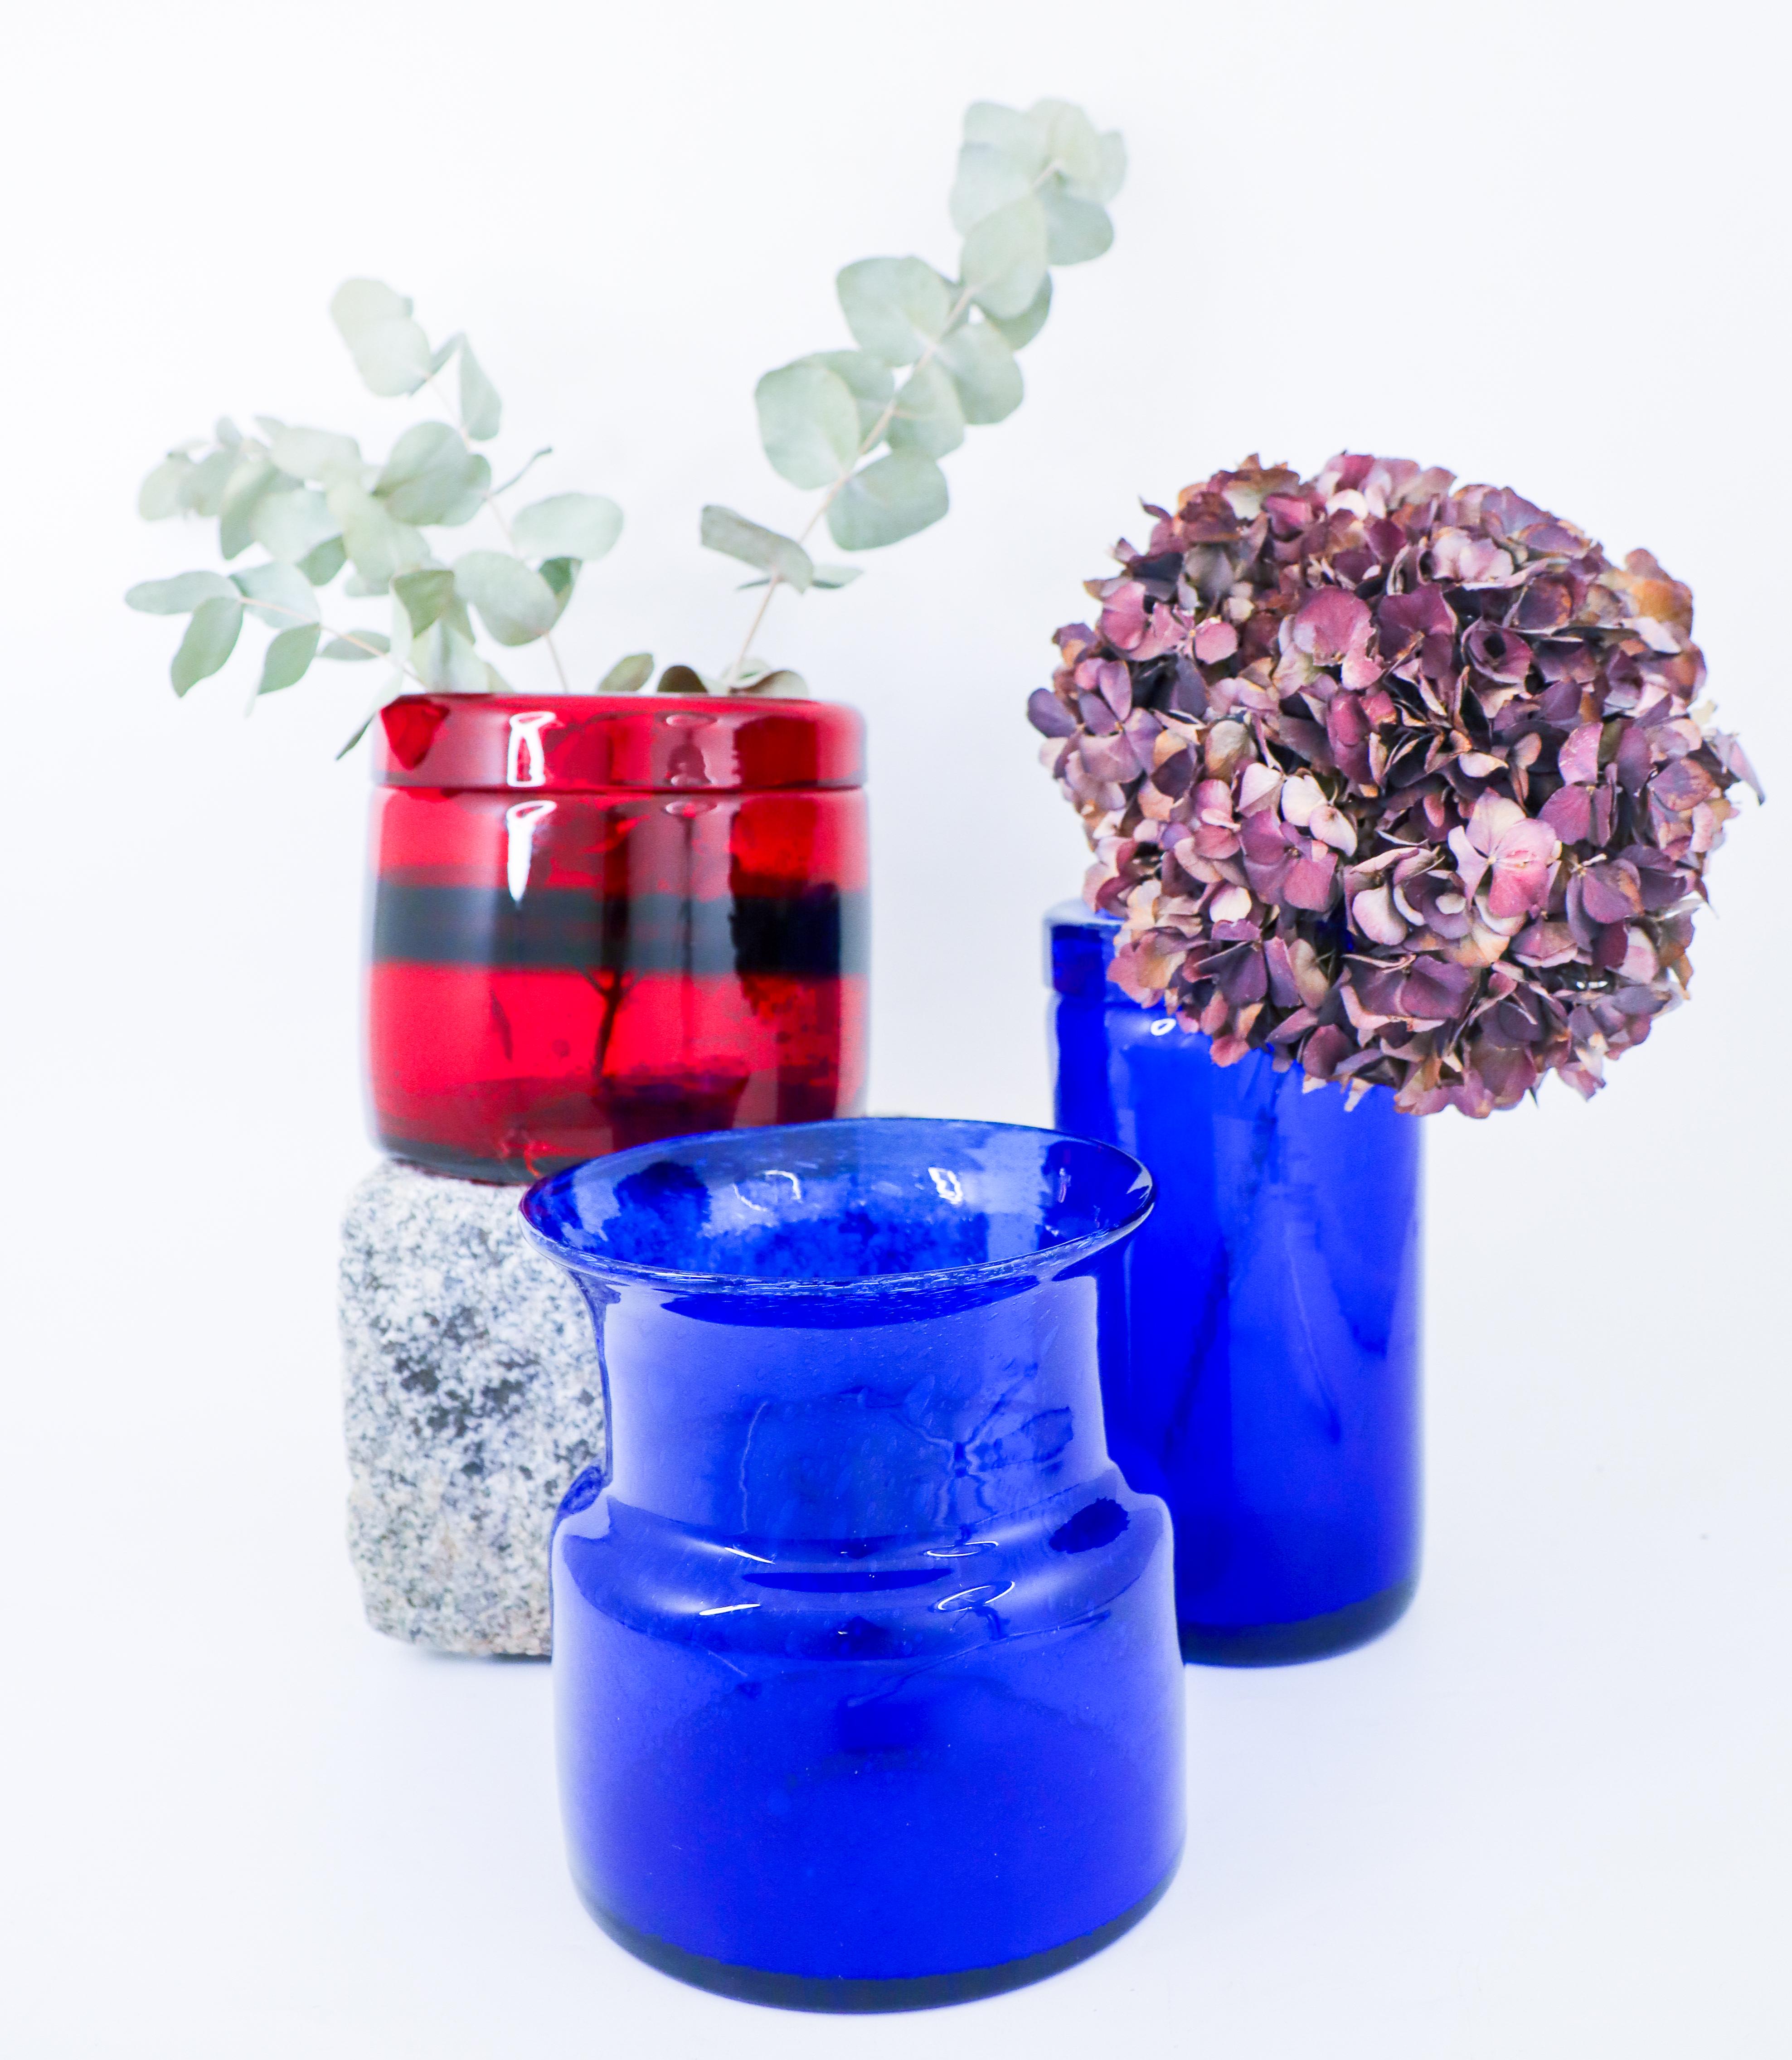 Trois vases en verre conçus par Erik Höglund à Boda, Suède. Le vase rouge a une hauteur de 13,5 cm et un diamètre de 15 cm, le vase bleu le plus haut a une hauteur de 21,5 cm et un diamètre de 11 cm, l'autre vase bleu a une hauteur de 16,5 cm et un